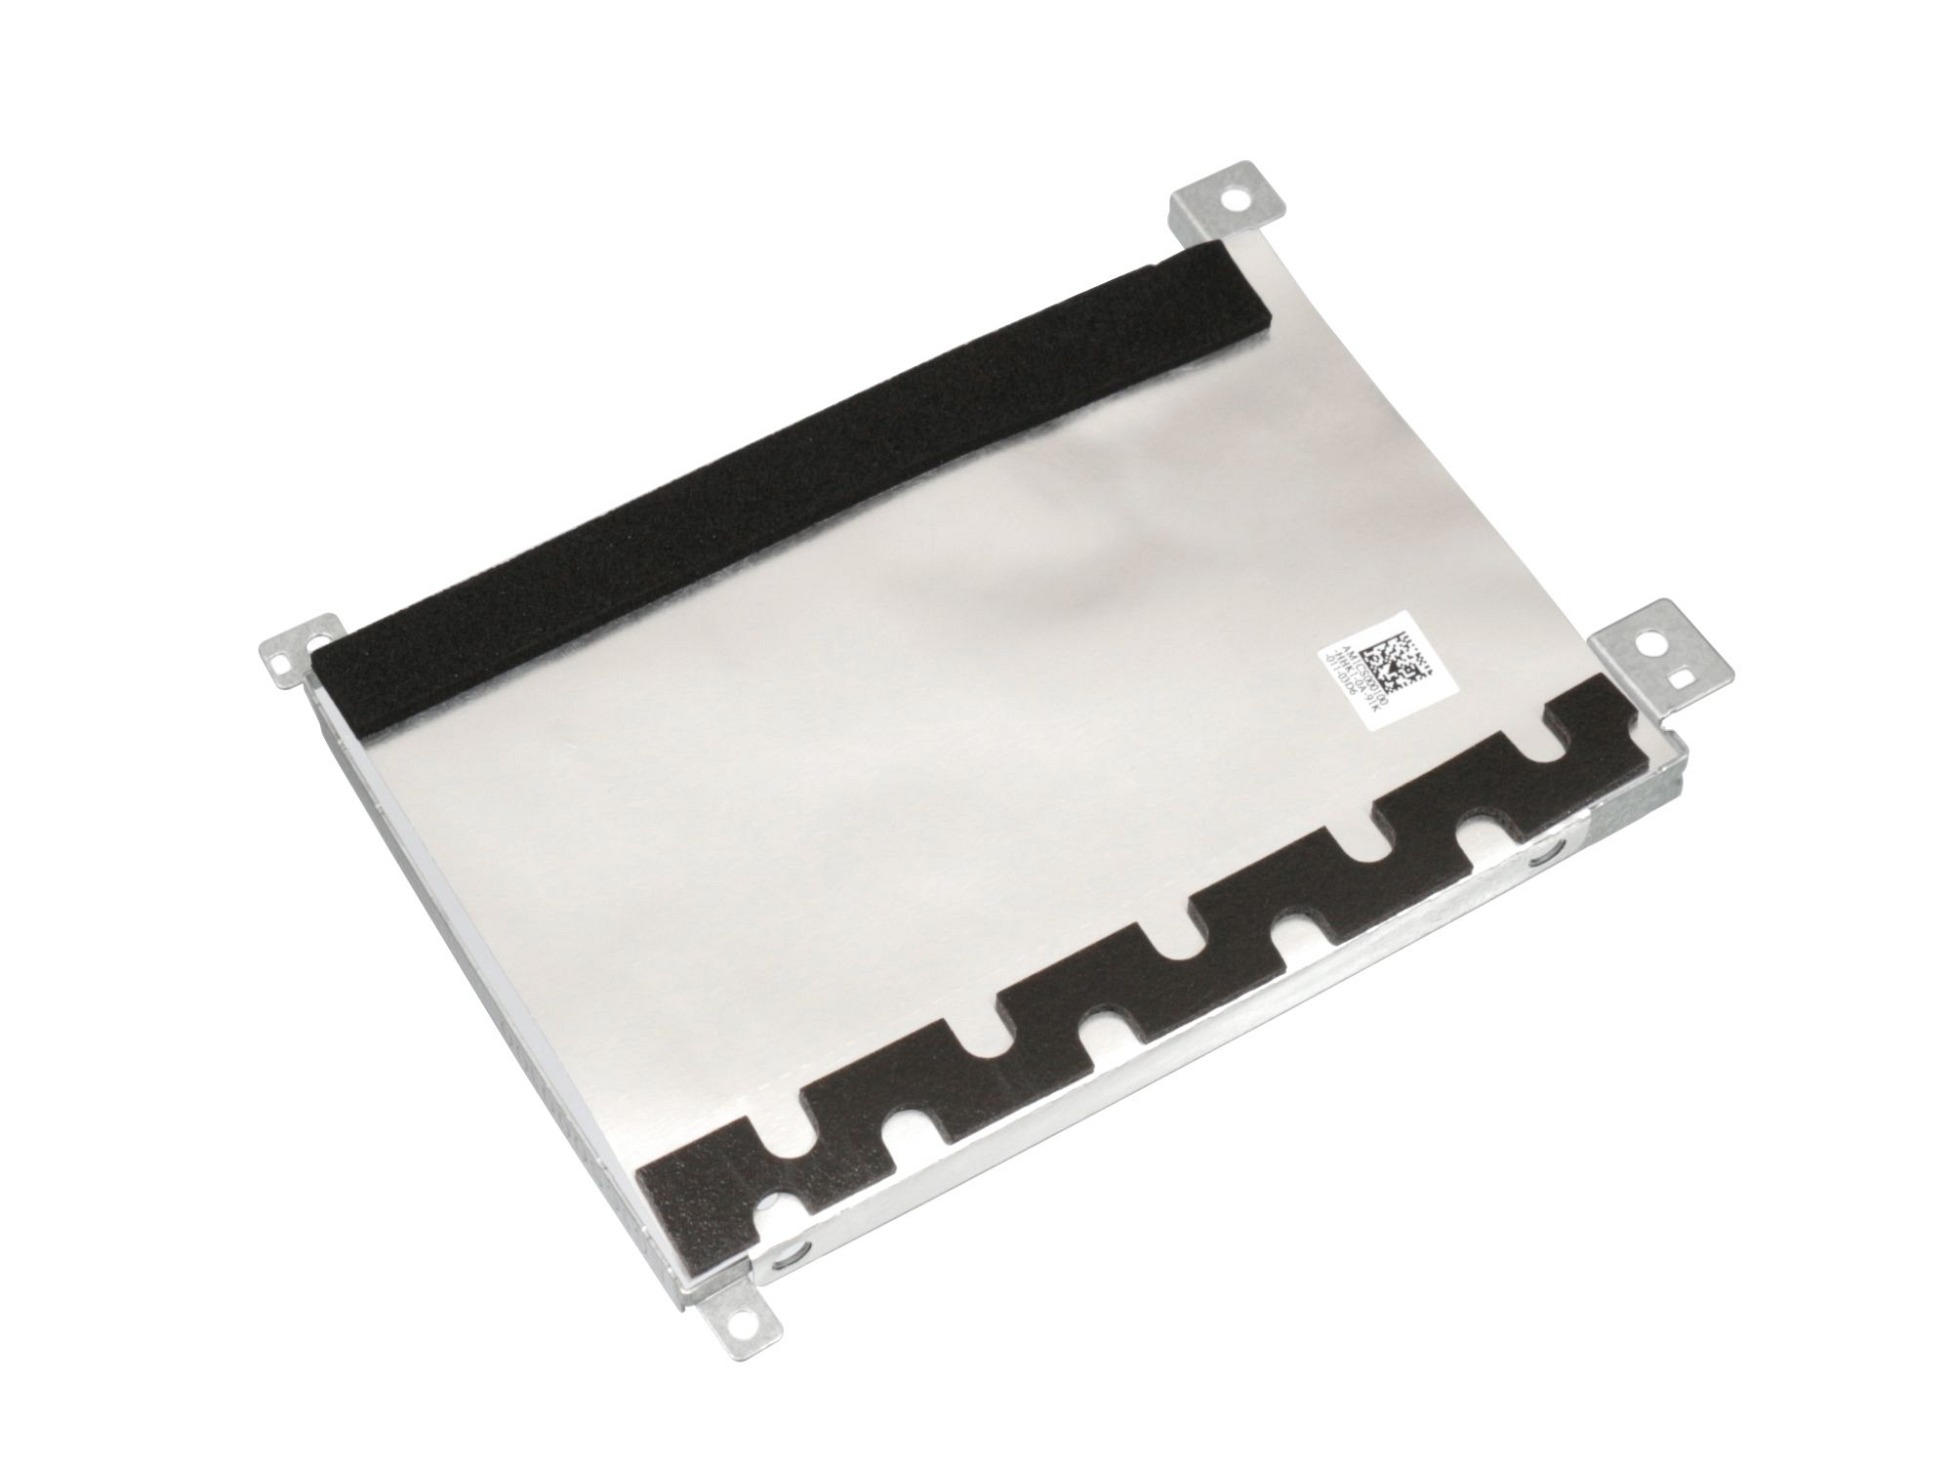 Festplatten-Einbaurahmen für den 1. Festplatten Schacht Original für Lenovo IdeaPad S145-14IKB (81VB)